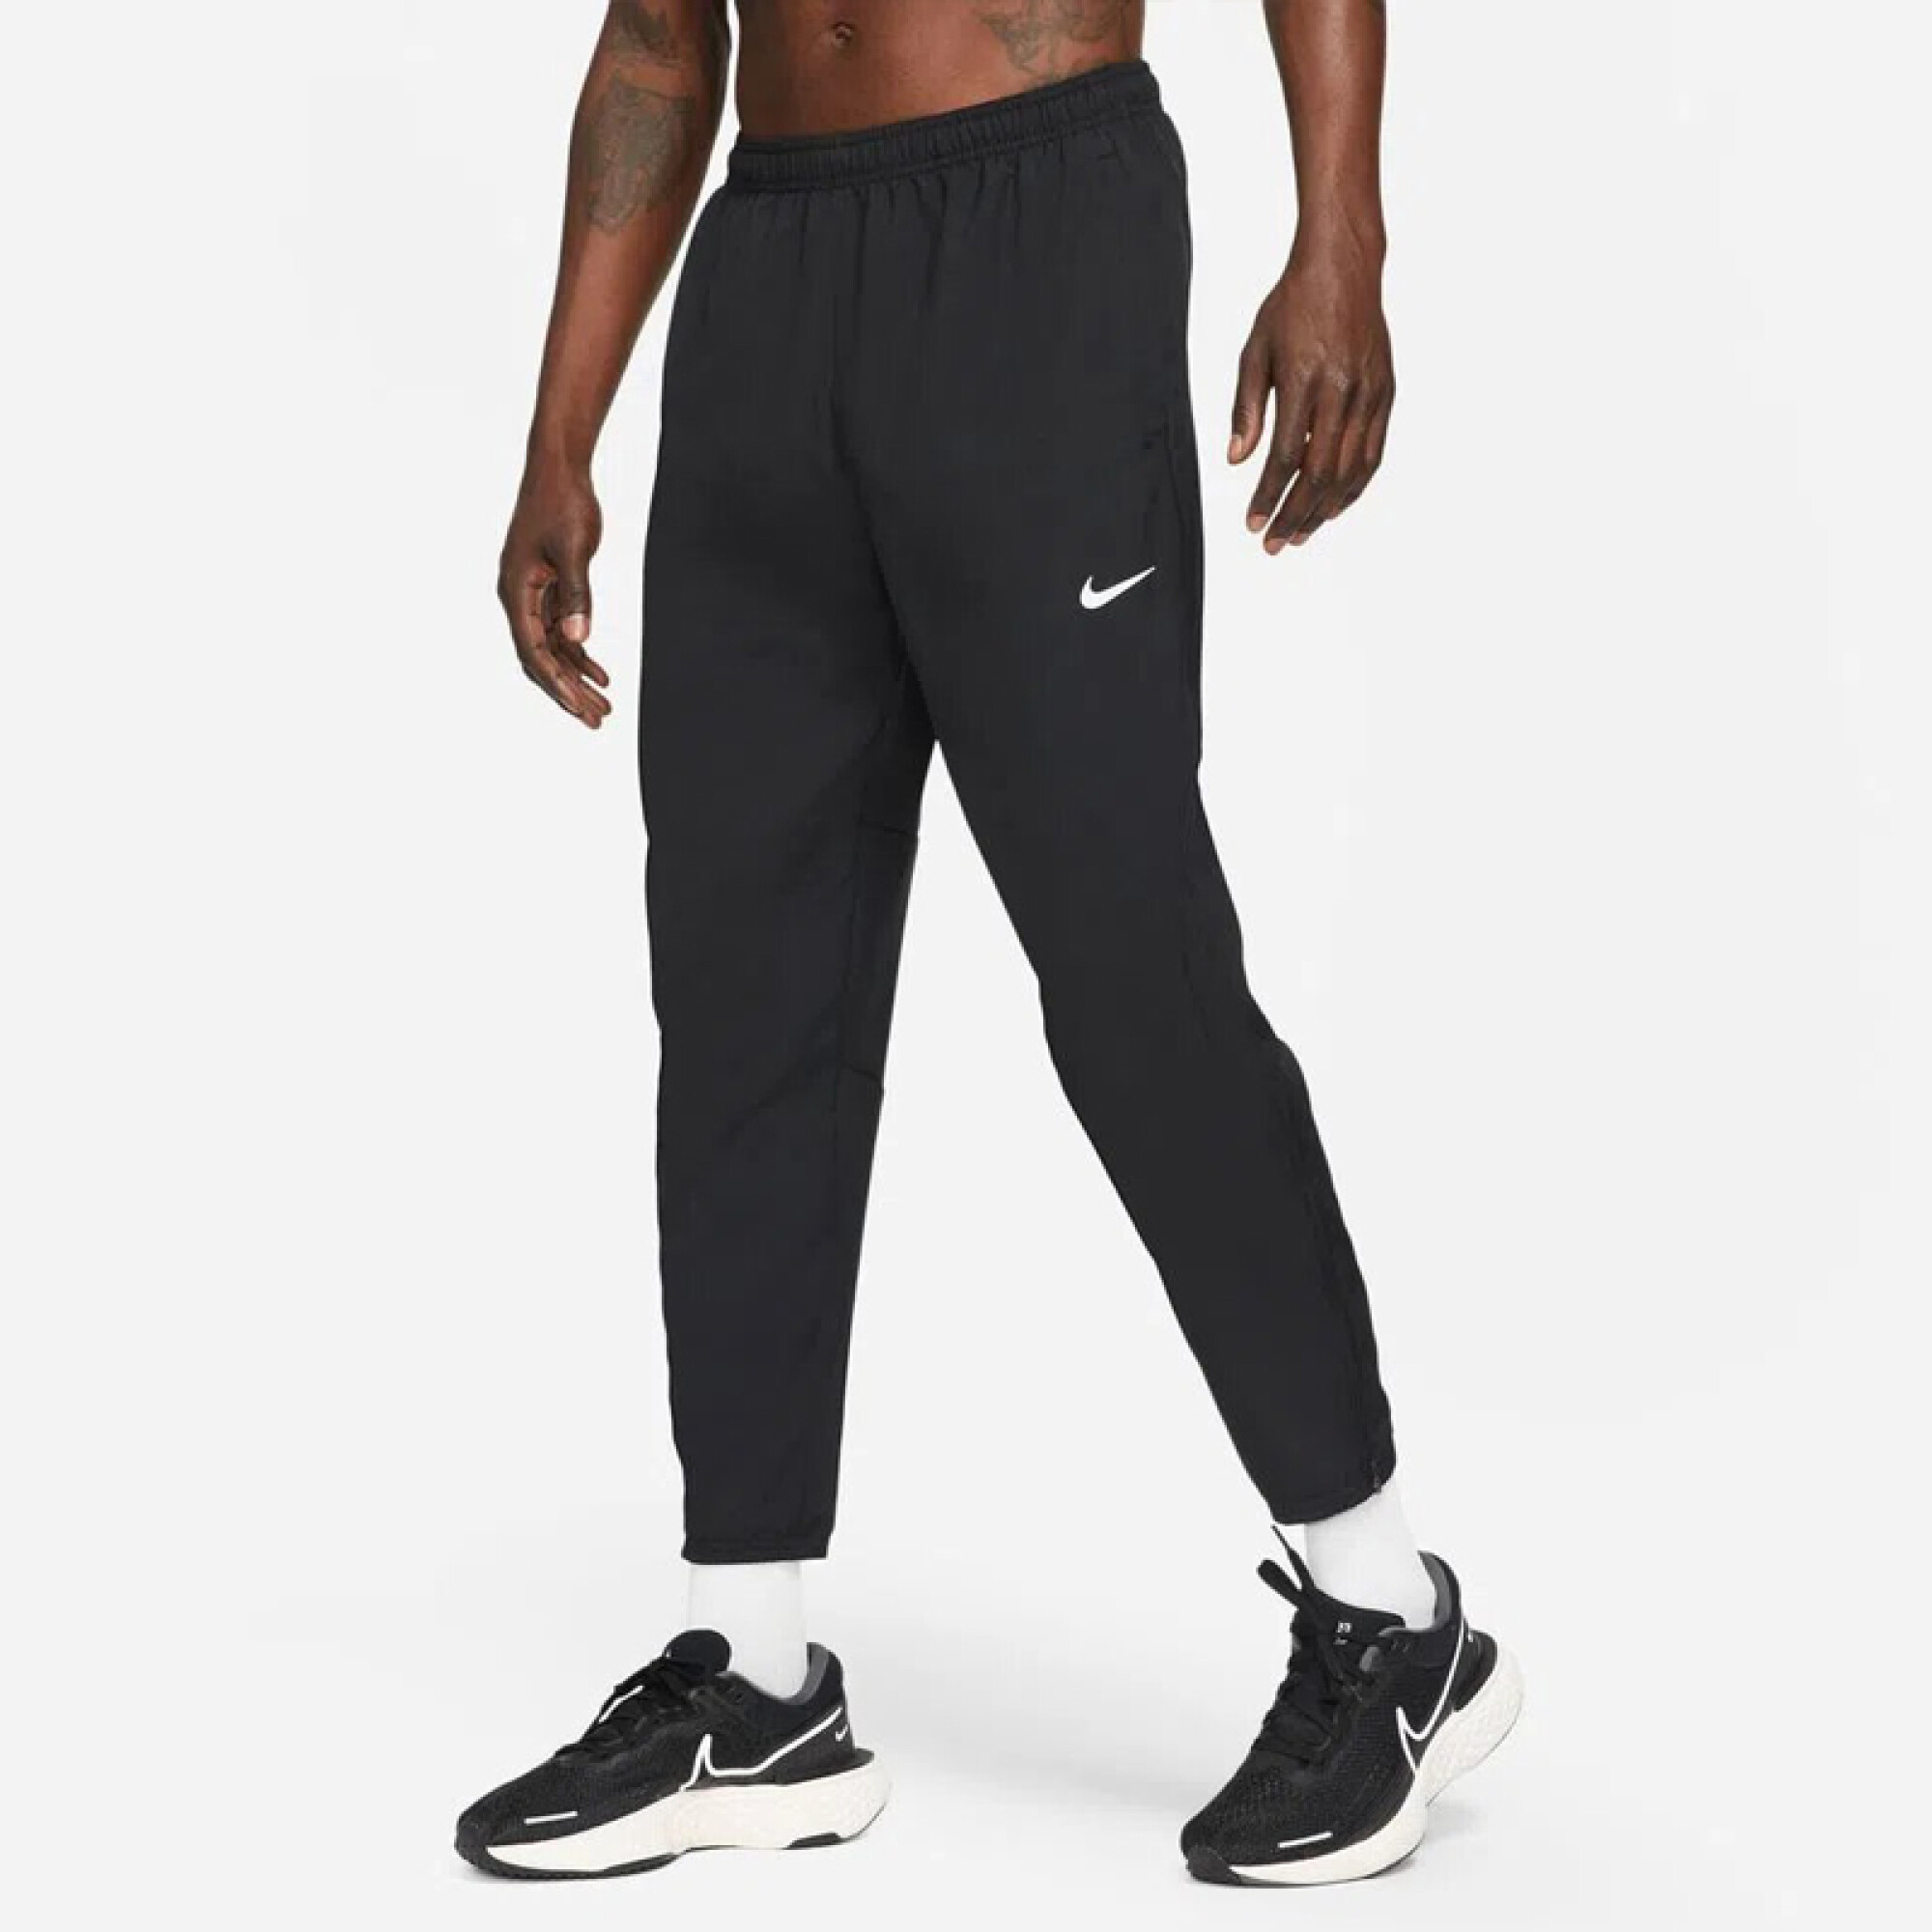 Pantalon Nike Challenger Hombre — La Cancha